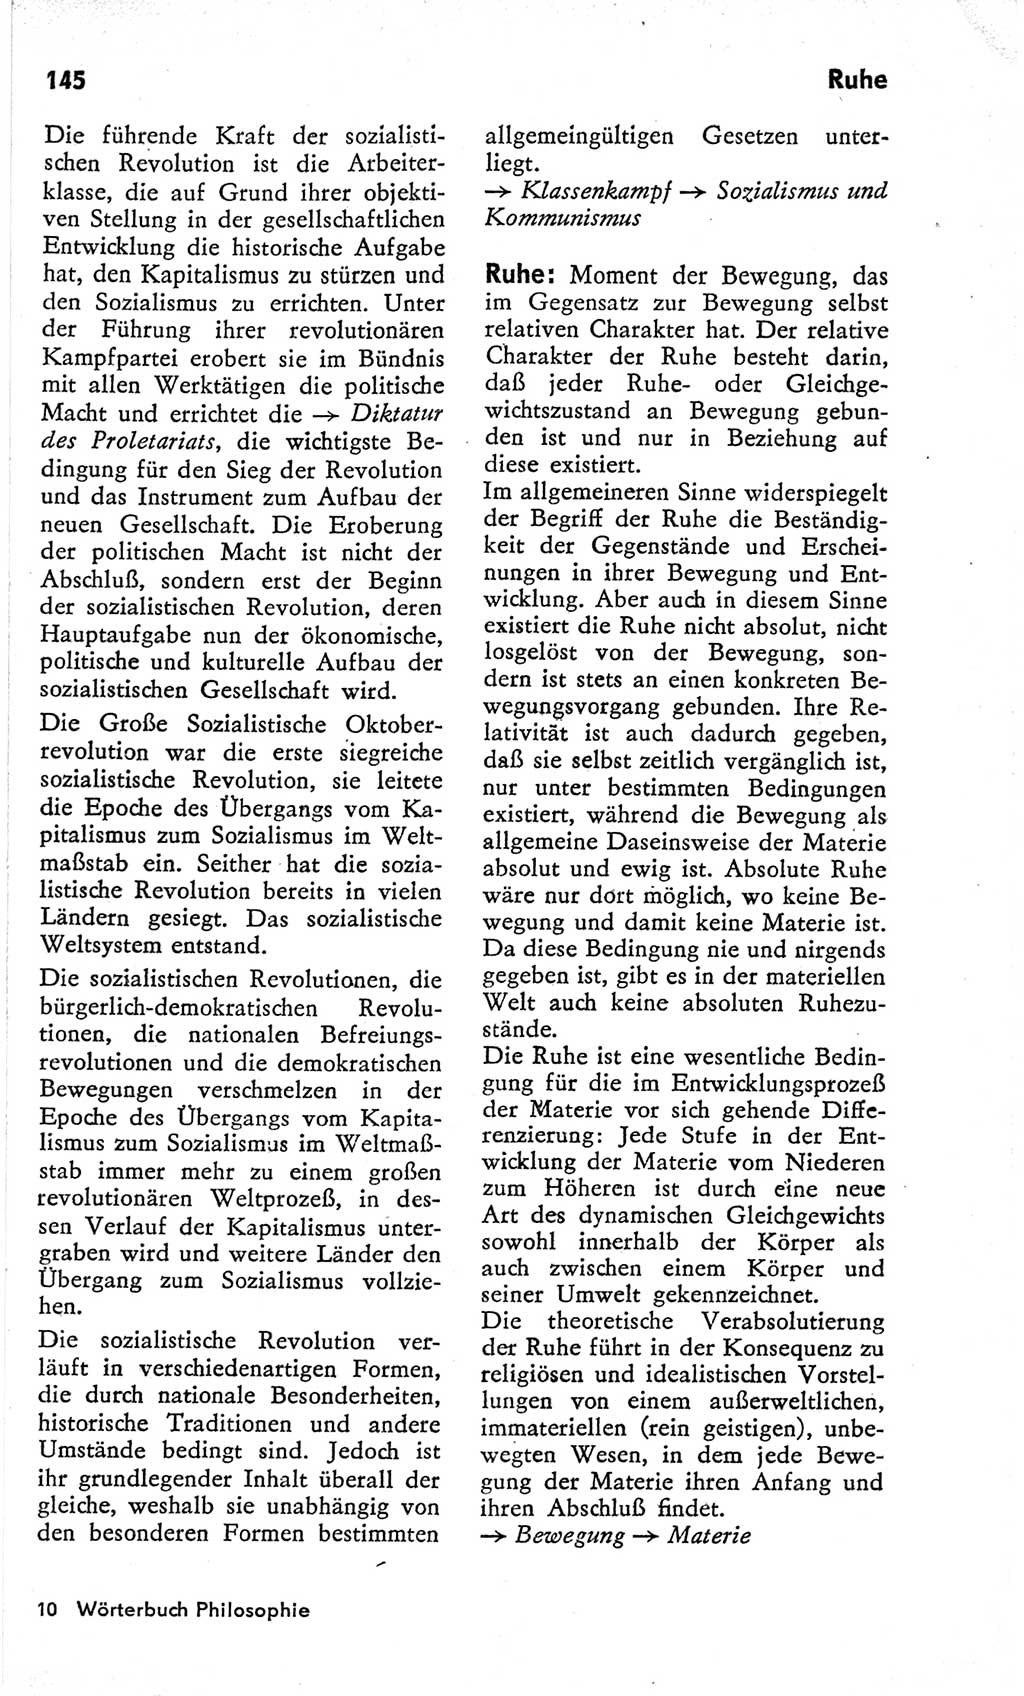 Kleines Wörterbuch der marxistisch-leninistischen Philosophie [Deutsche Demokratische Republik (DDR)] 1966, Seite 145 (Kl. Wb. ML Phil. DDR 1966, S. 145)